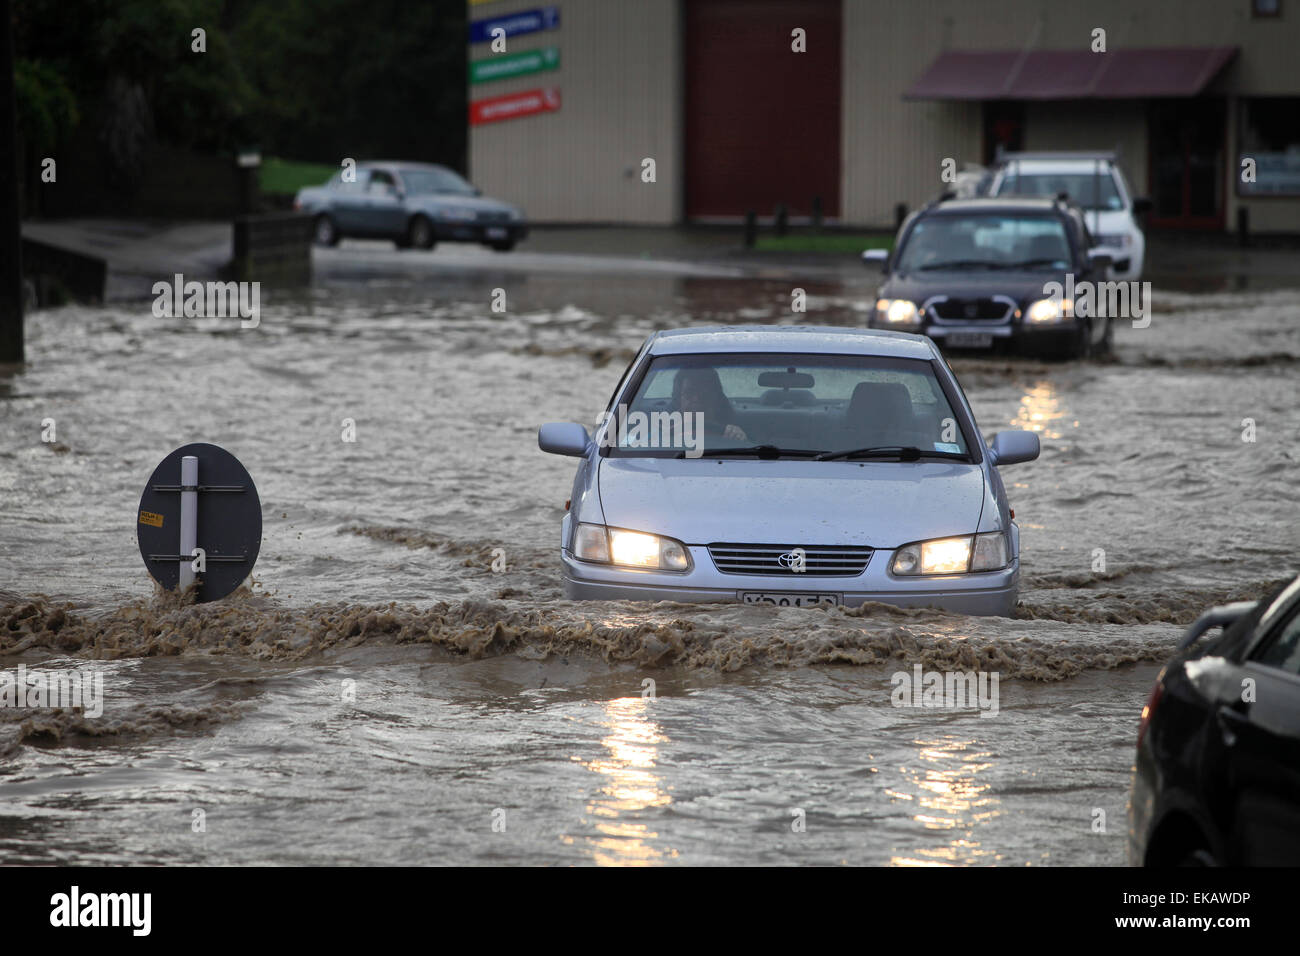 Les voitures se déplacent à travers l'inondation dans la région de Nelson, Nouvelle-Zélande après une forte averse de pluie Banque D'Images